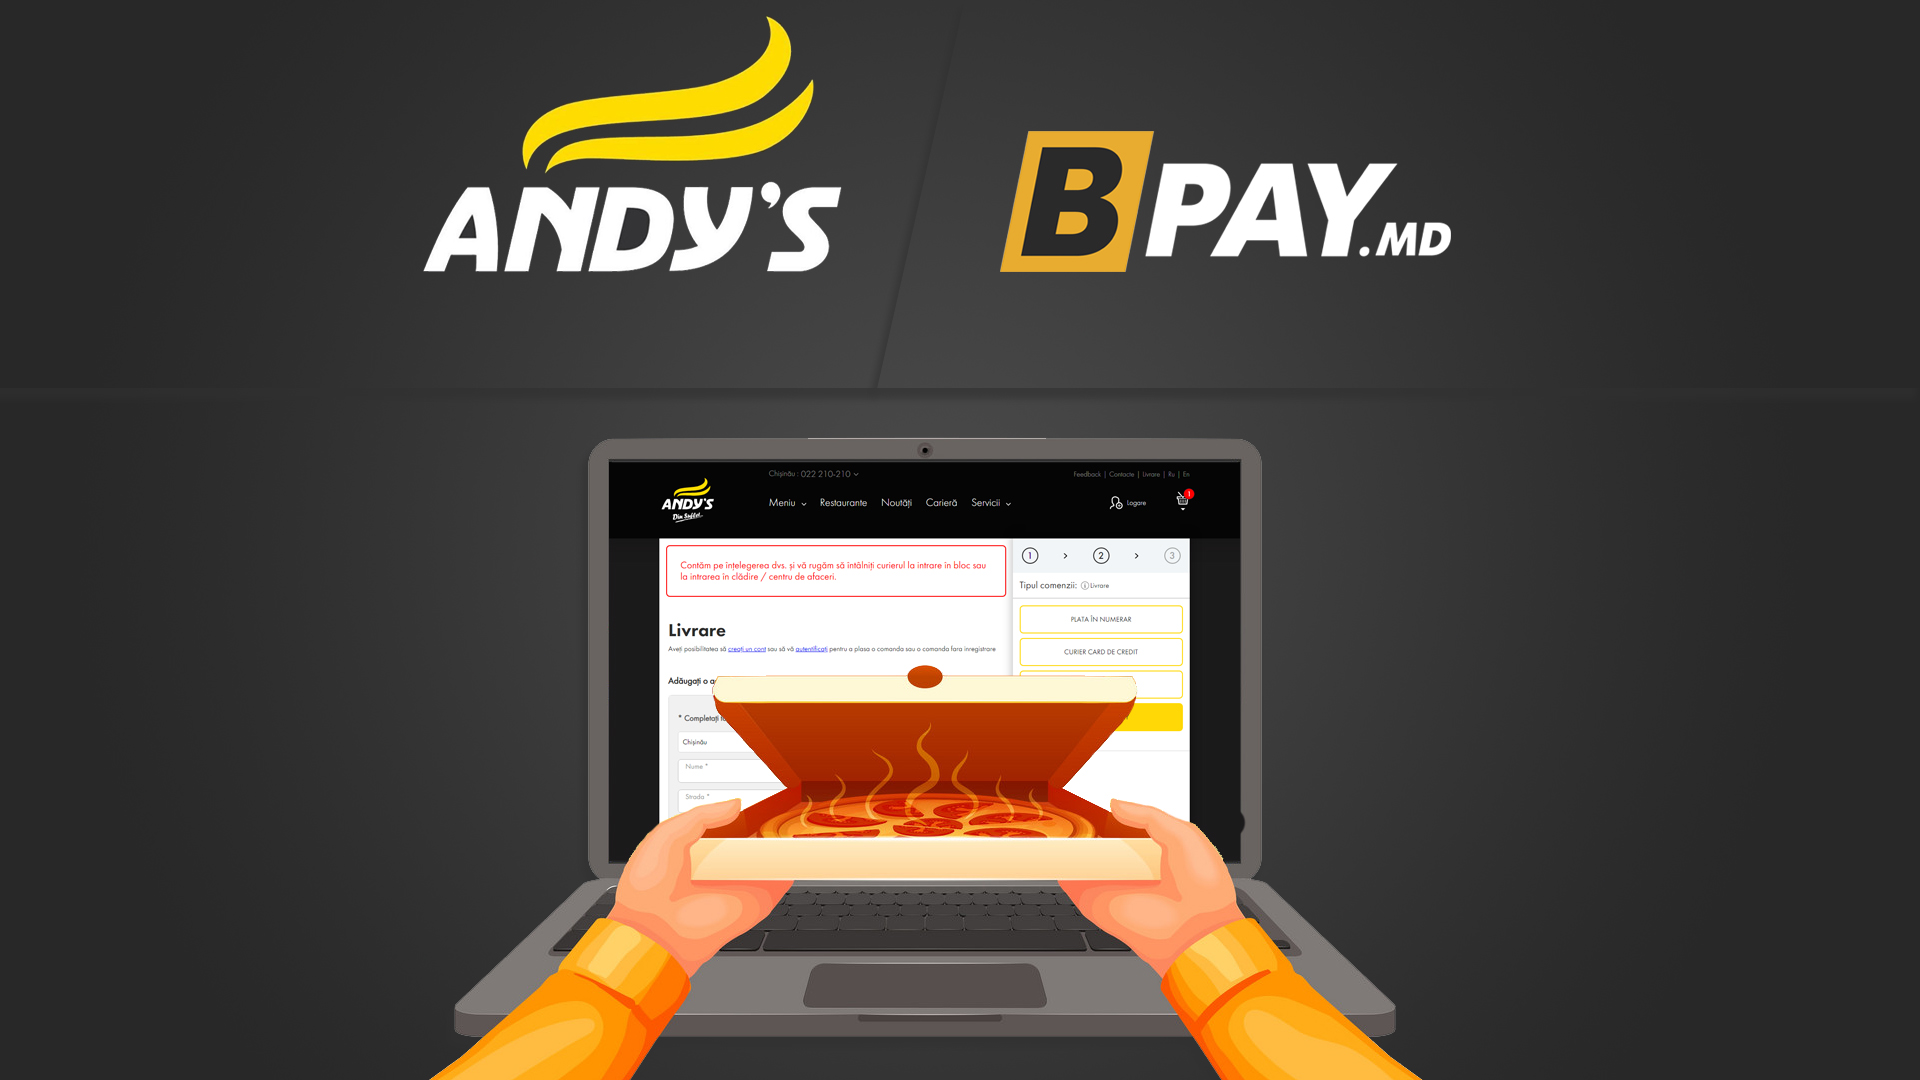 Achitarea comenzilor de pe site-ul Andy’s cu portofelul BPAY